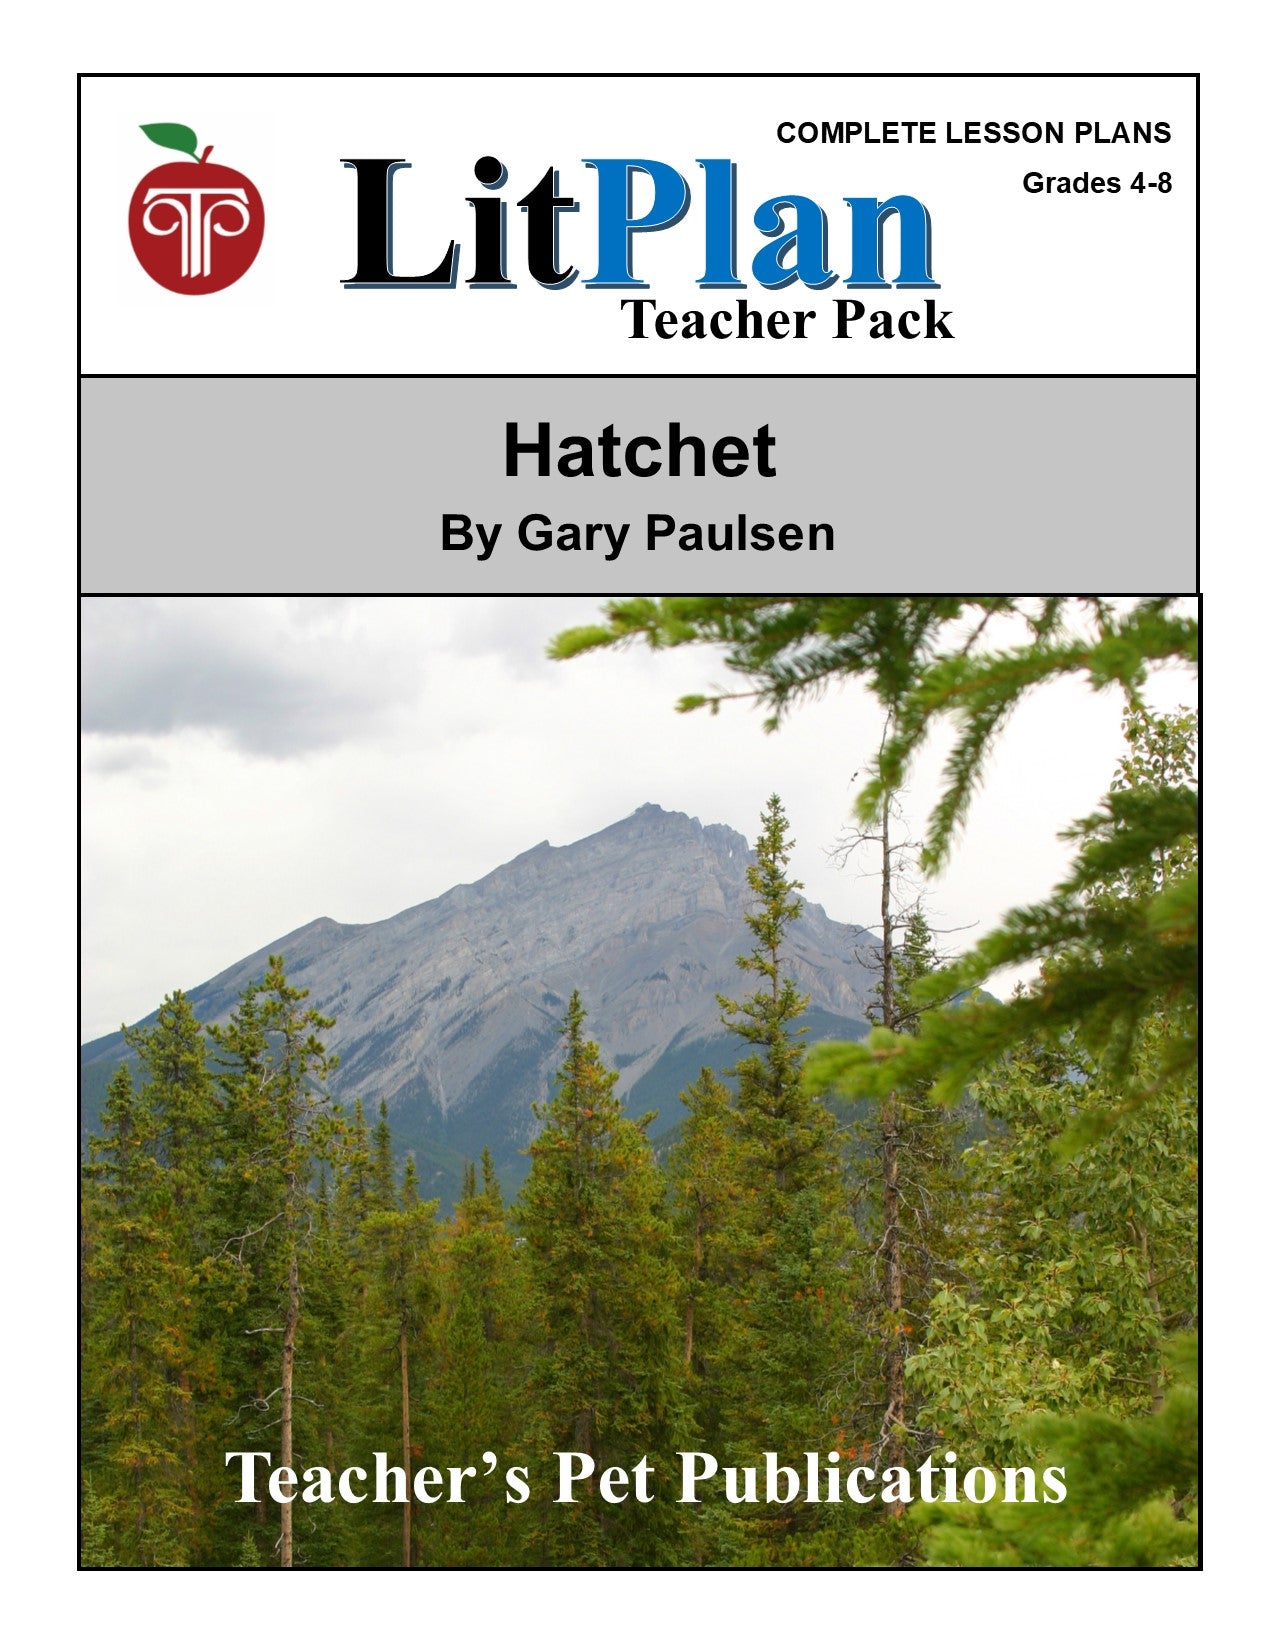 Hatchet: LitPlan Teacher Pack Grades 4-8